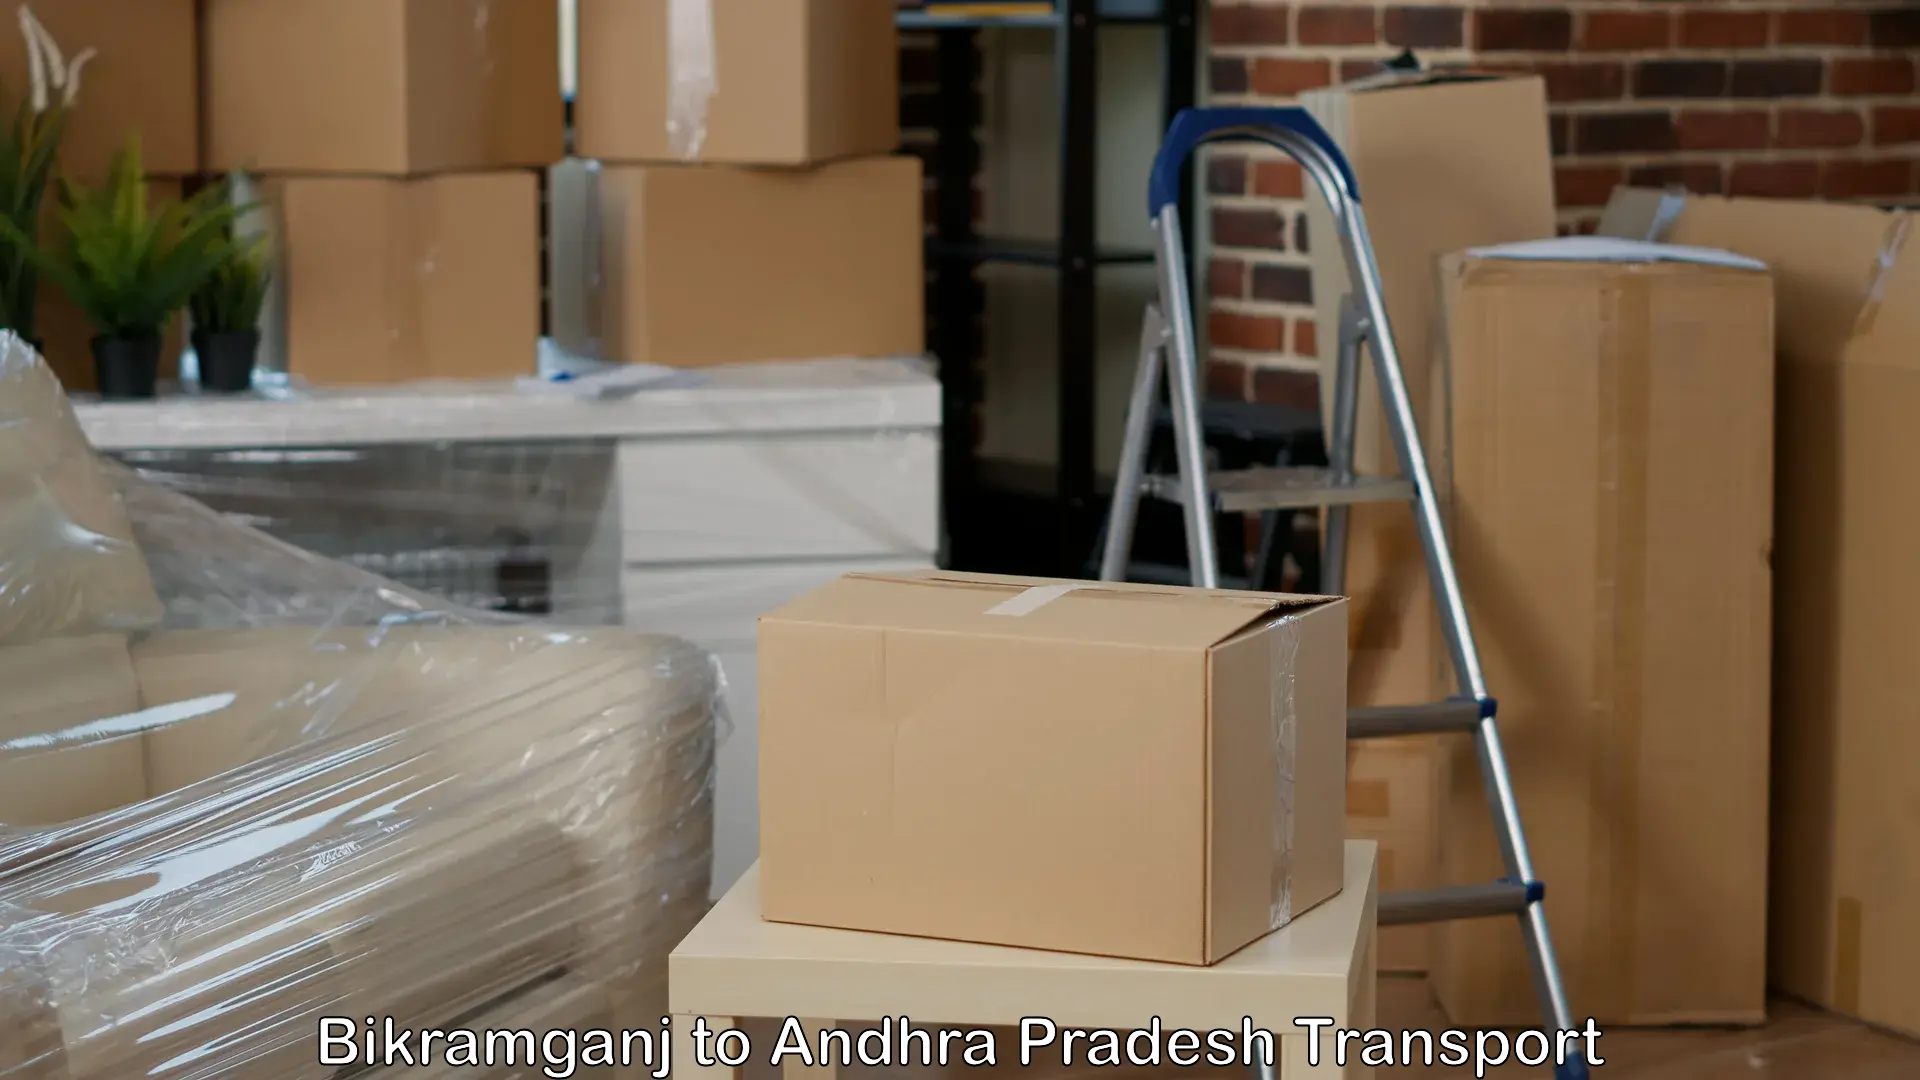 Furniture transport service Bikramganj to Ongole